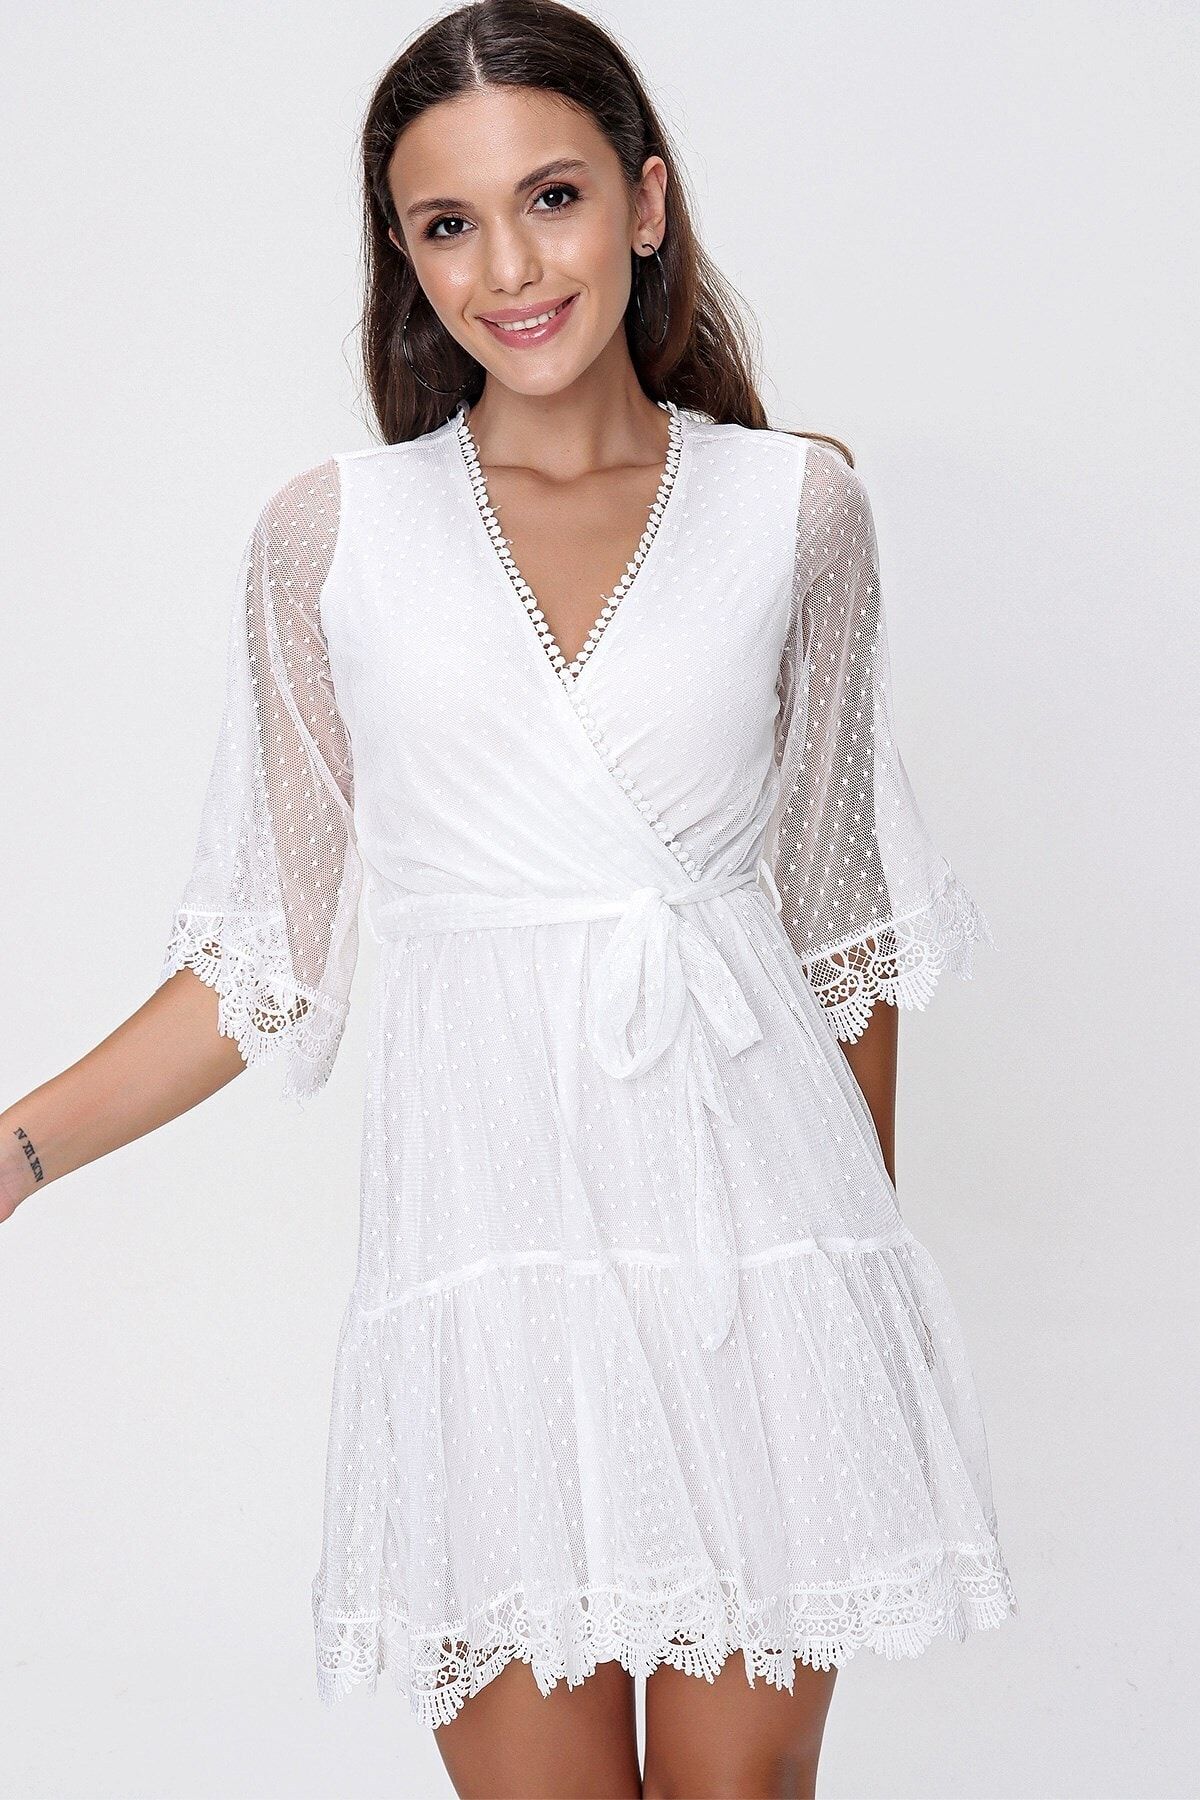 By Saygı Kadın Kruvaze Yaka Beli Kuşaklı Astarlı Benekli Tül Elbise Beyaz